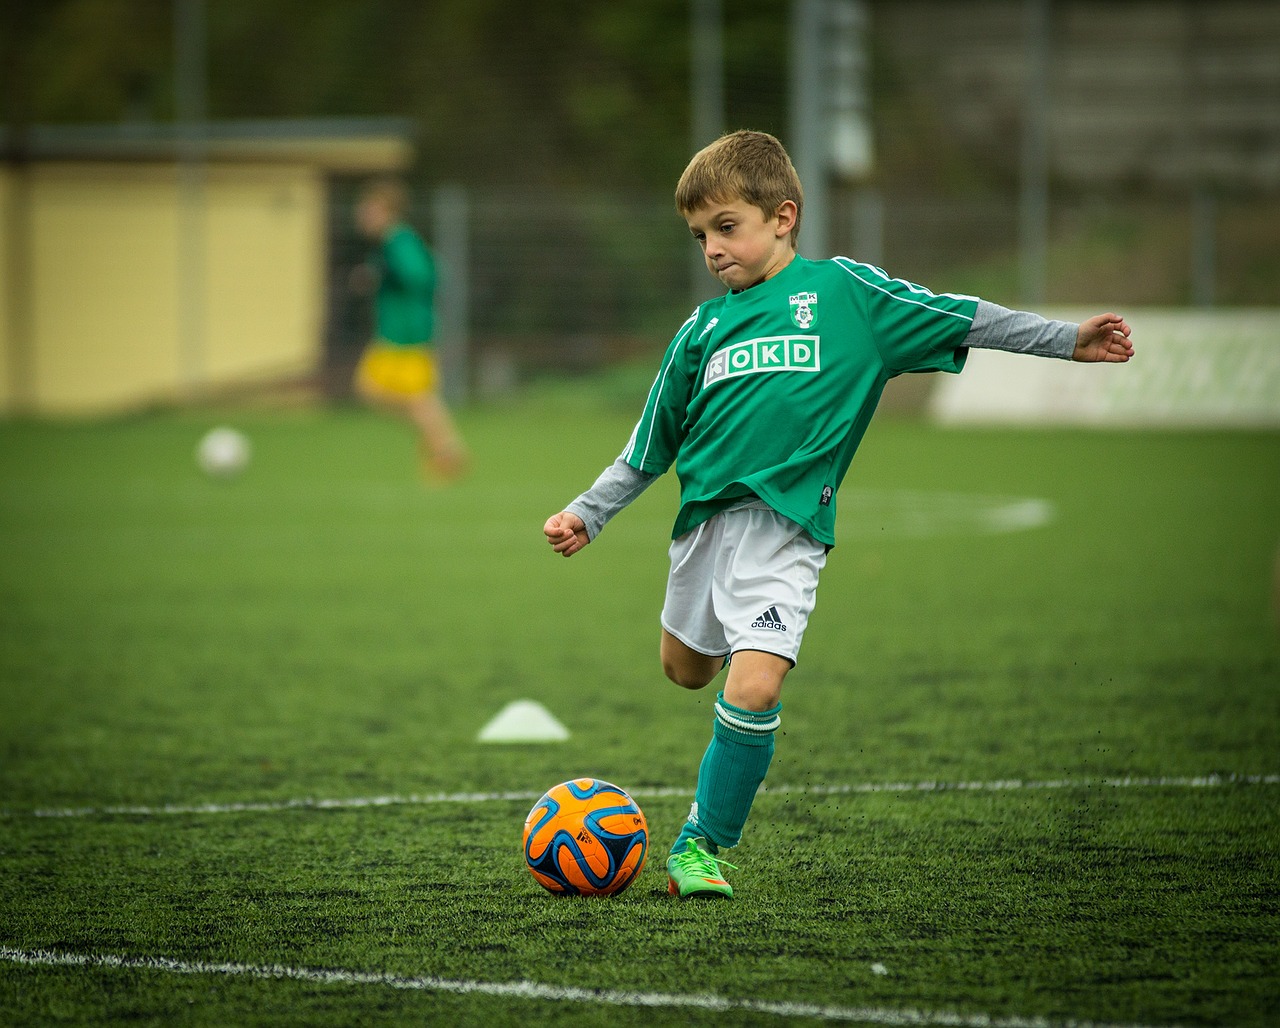 Trenowanie piłki nożnej – ubranie sportowe. Akcesoria piłkarskie do treningu